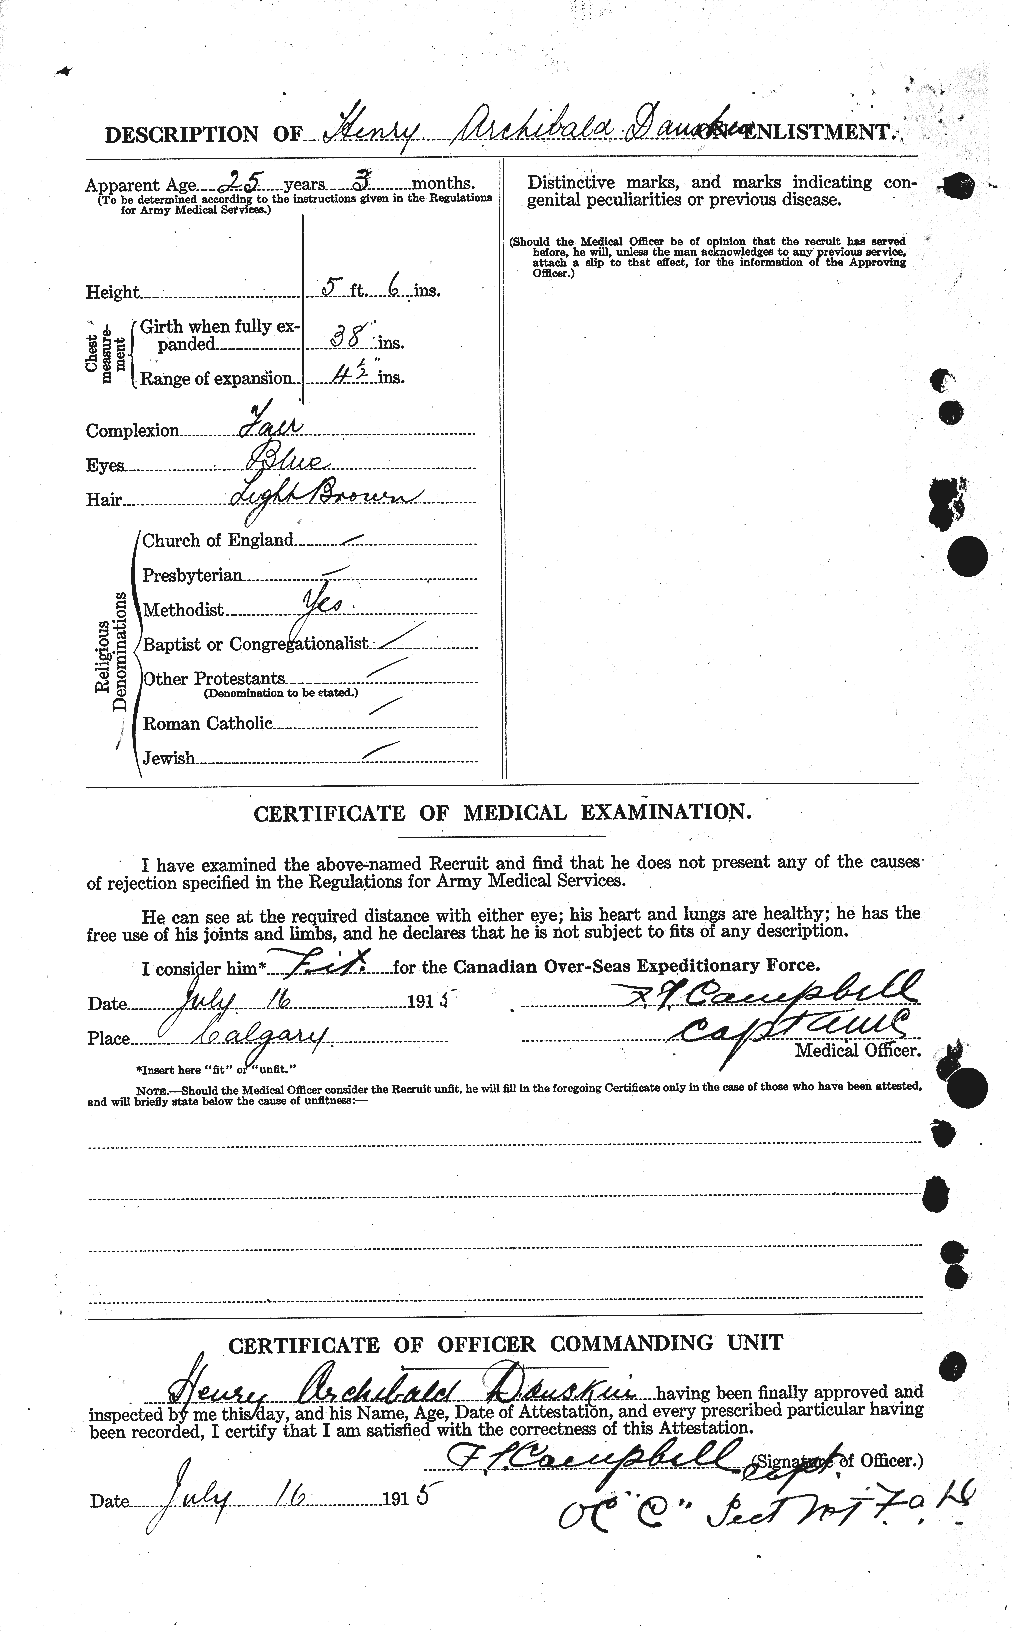 Dossiers du Personnel de la Première Guerre mondiale - CEC 279862b